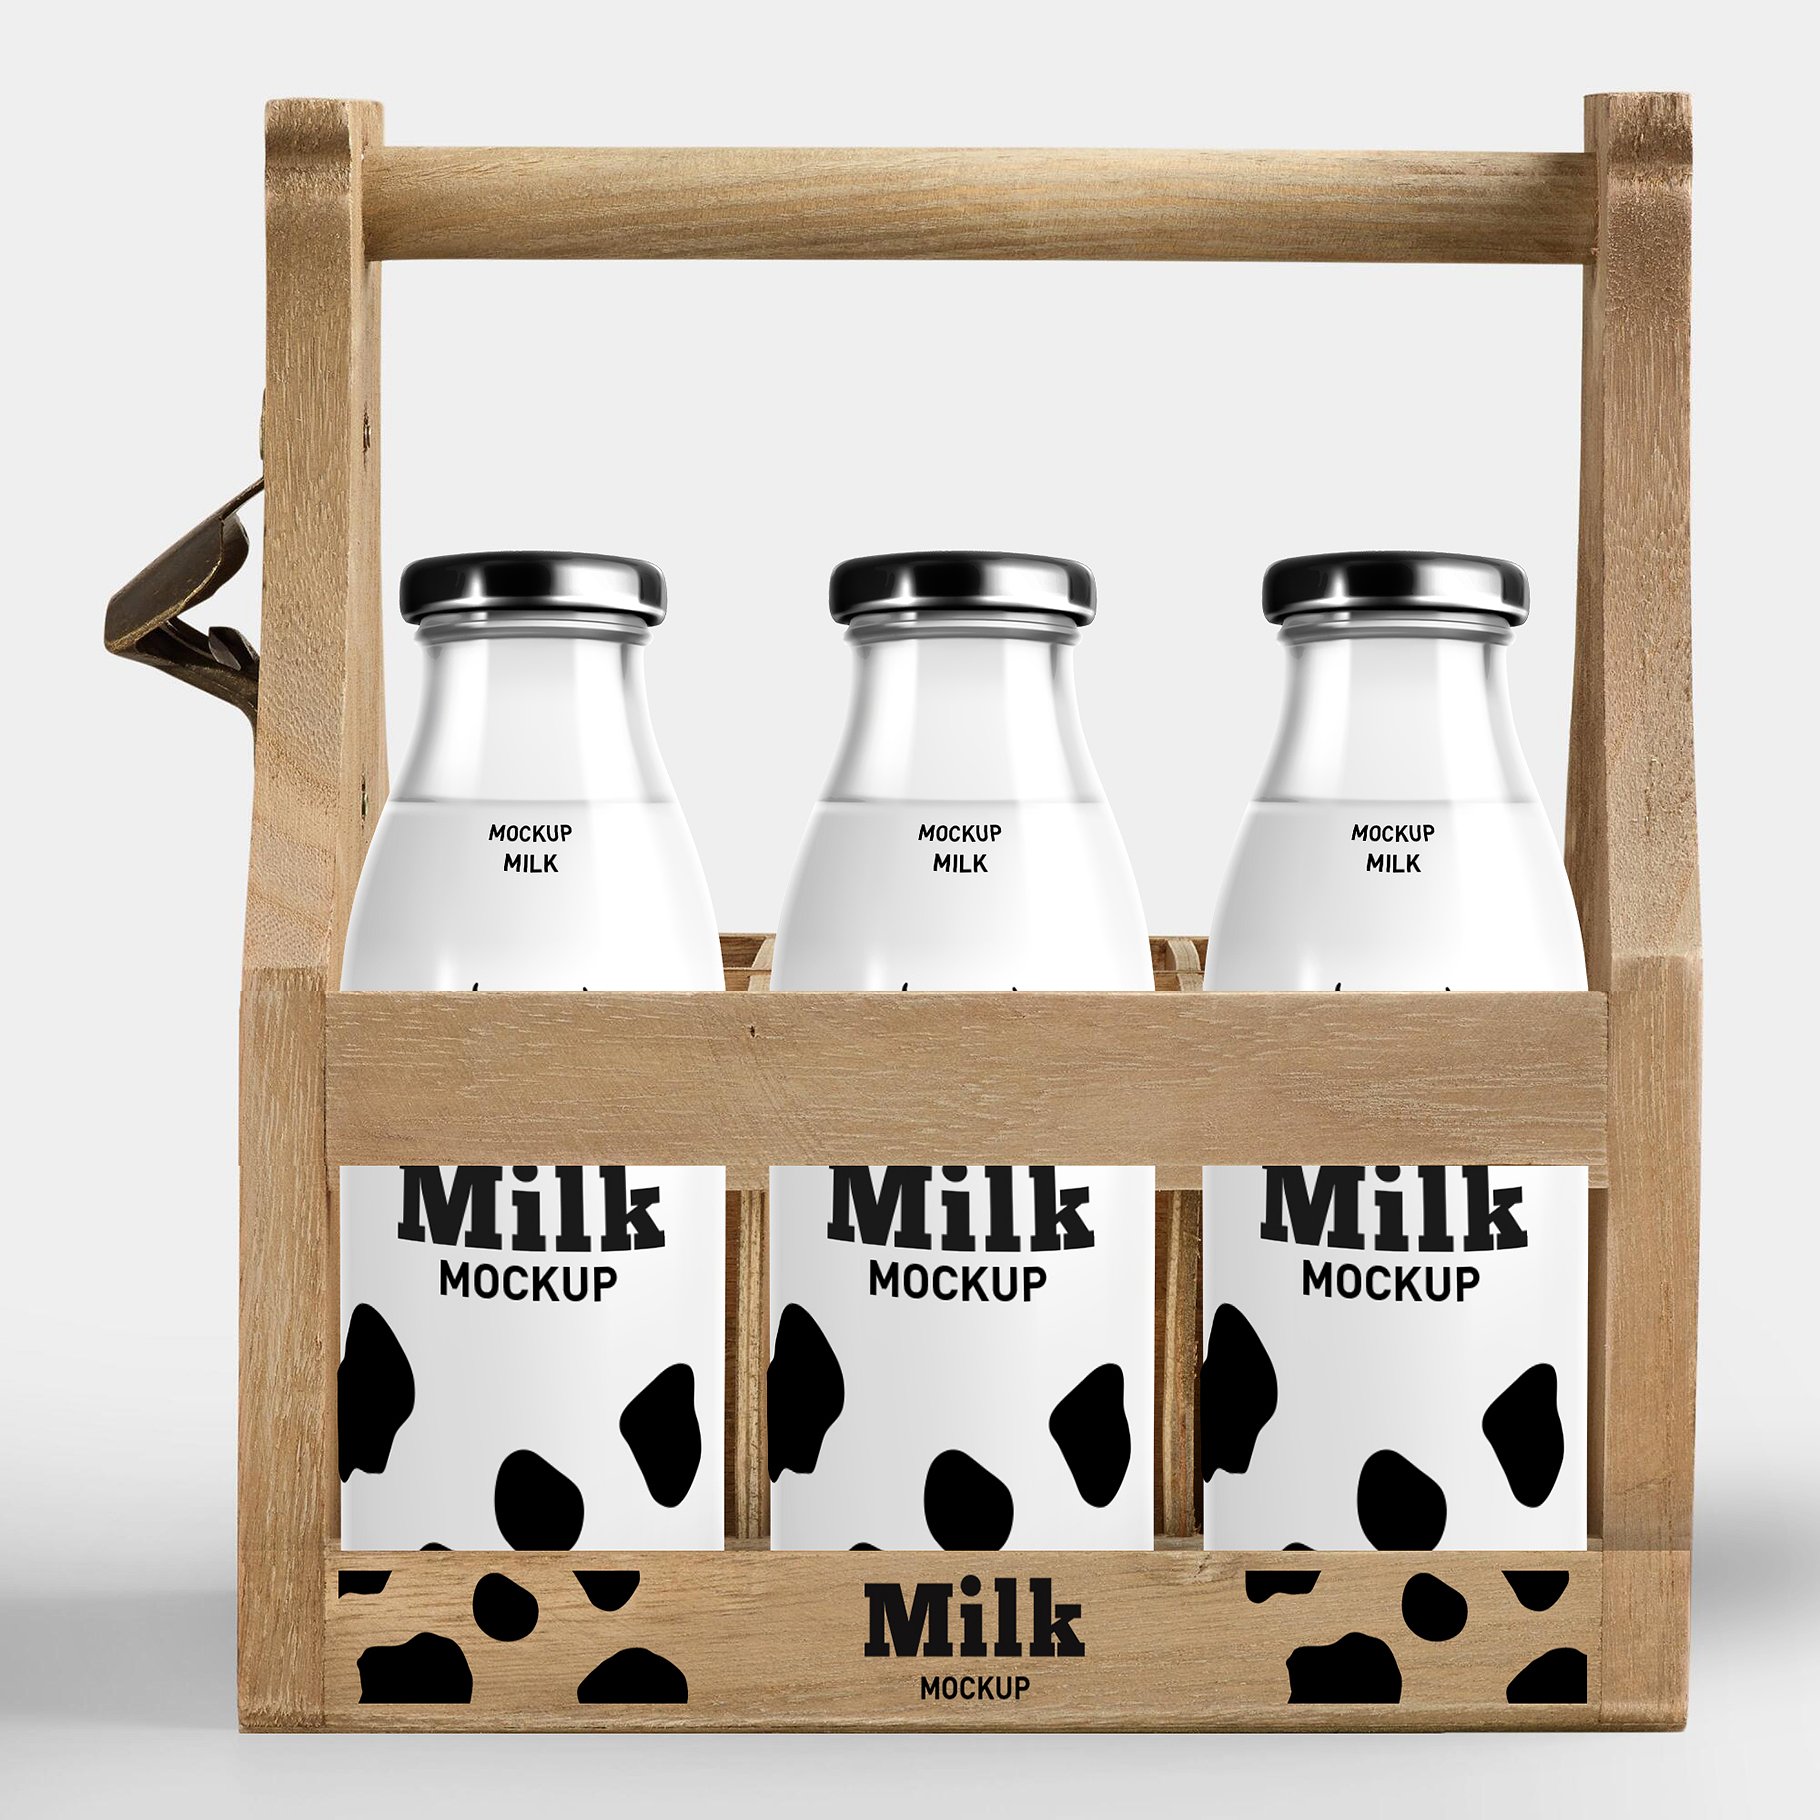 牛奶酸奶瓶包装样机展示模型mockups插图8